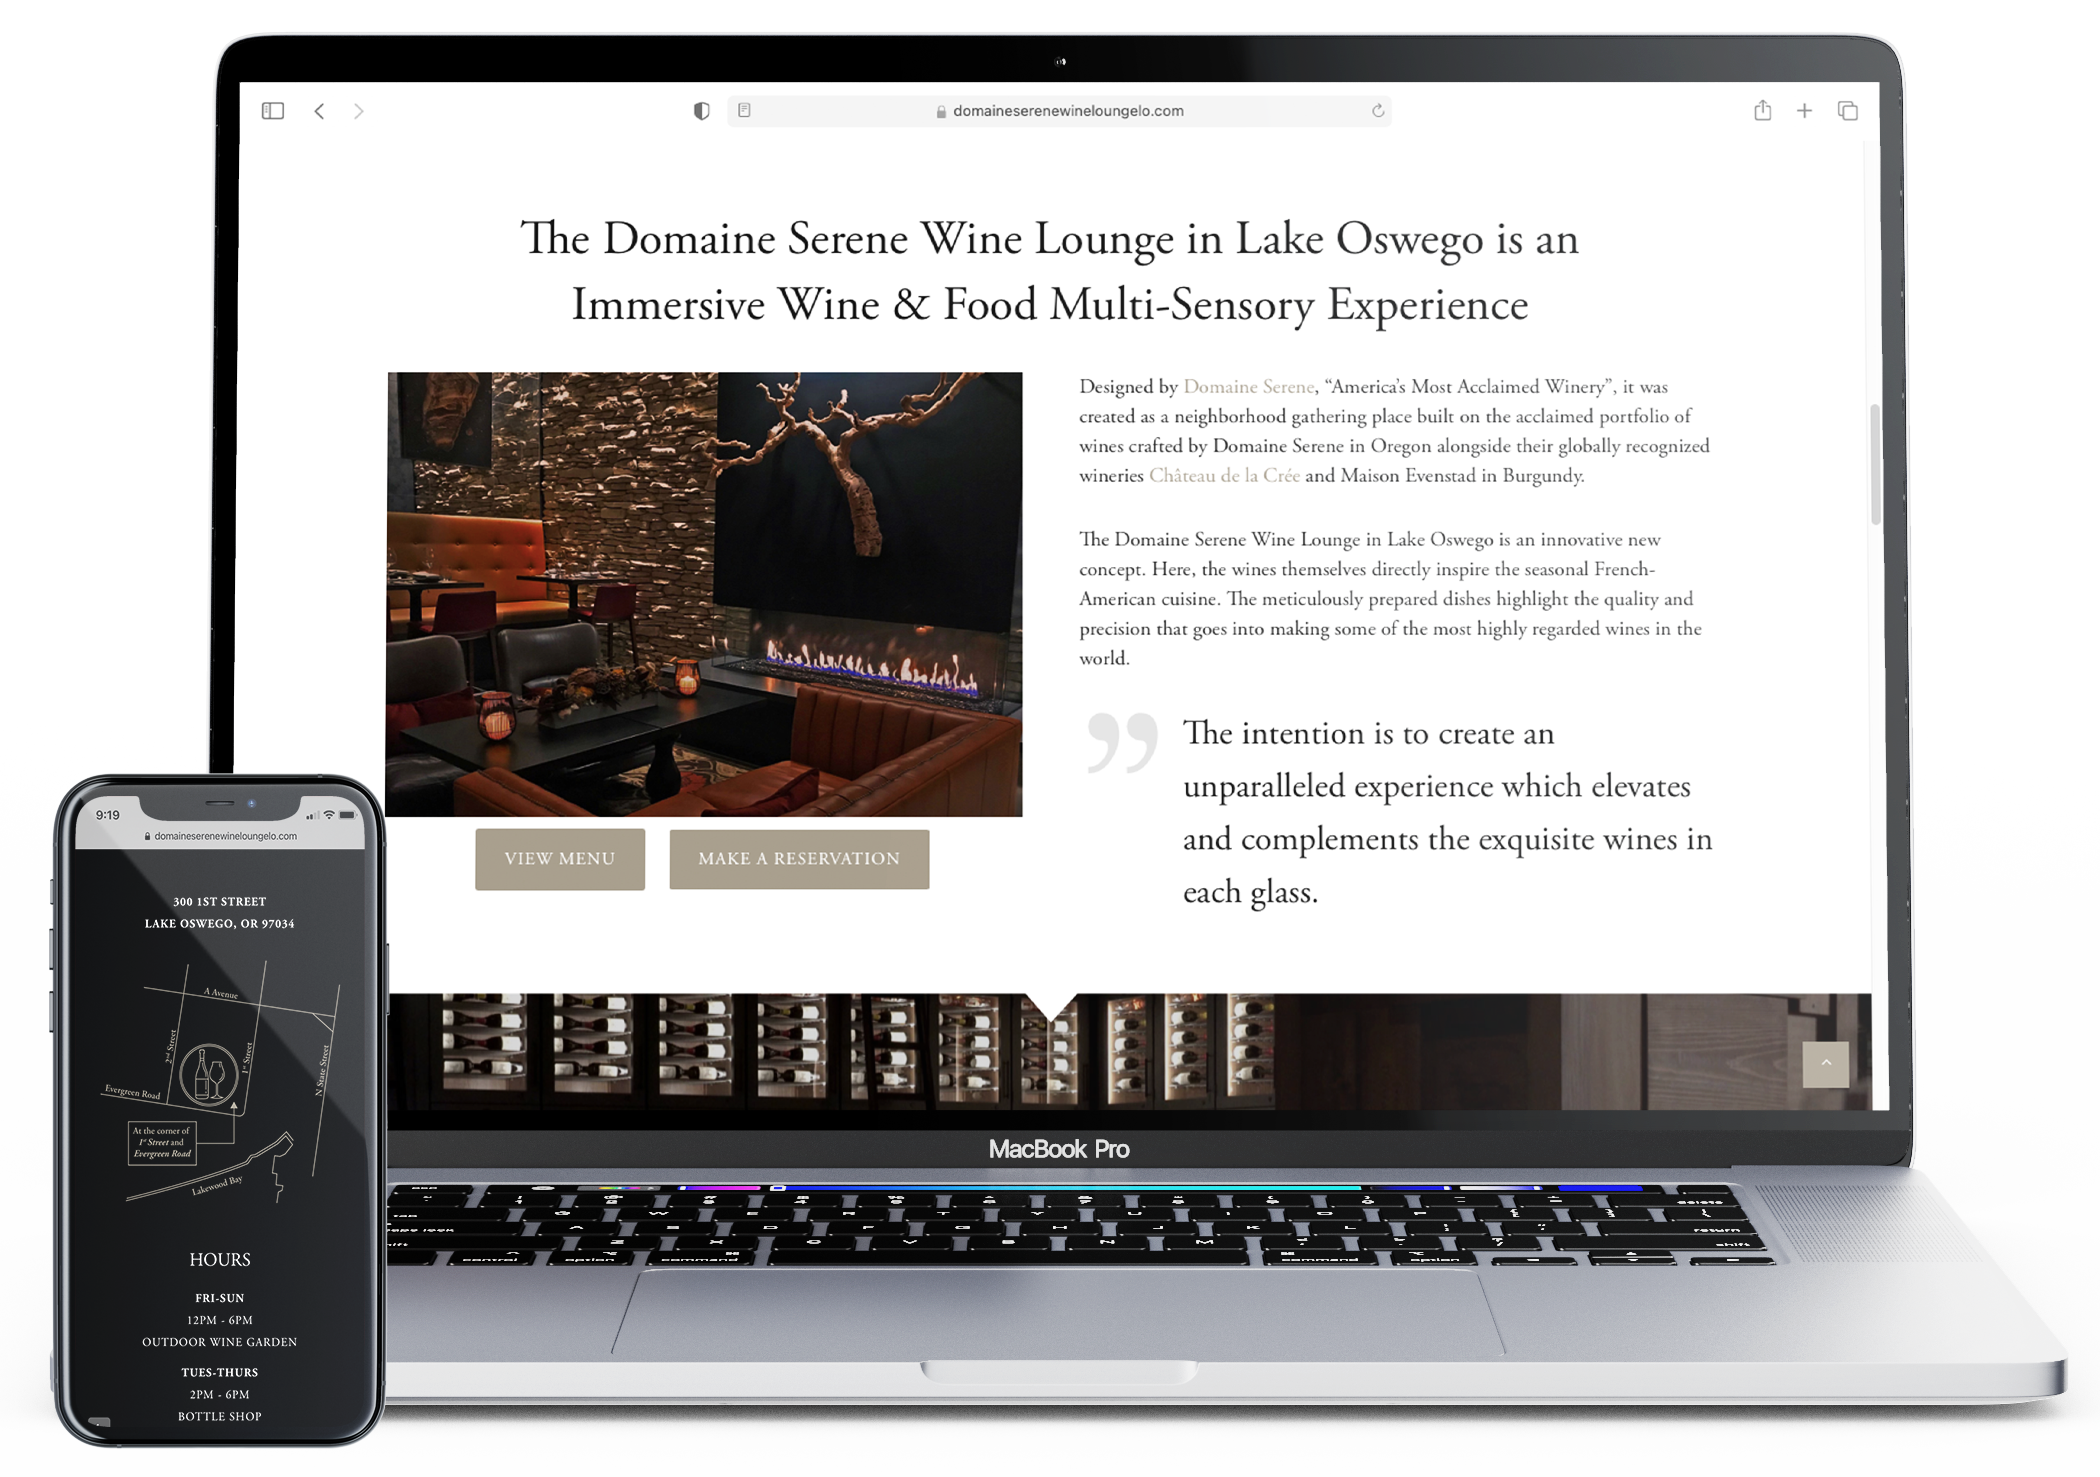 Website mockup for Domaine Serene Wine